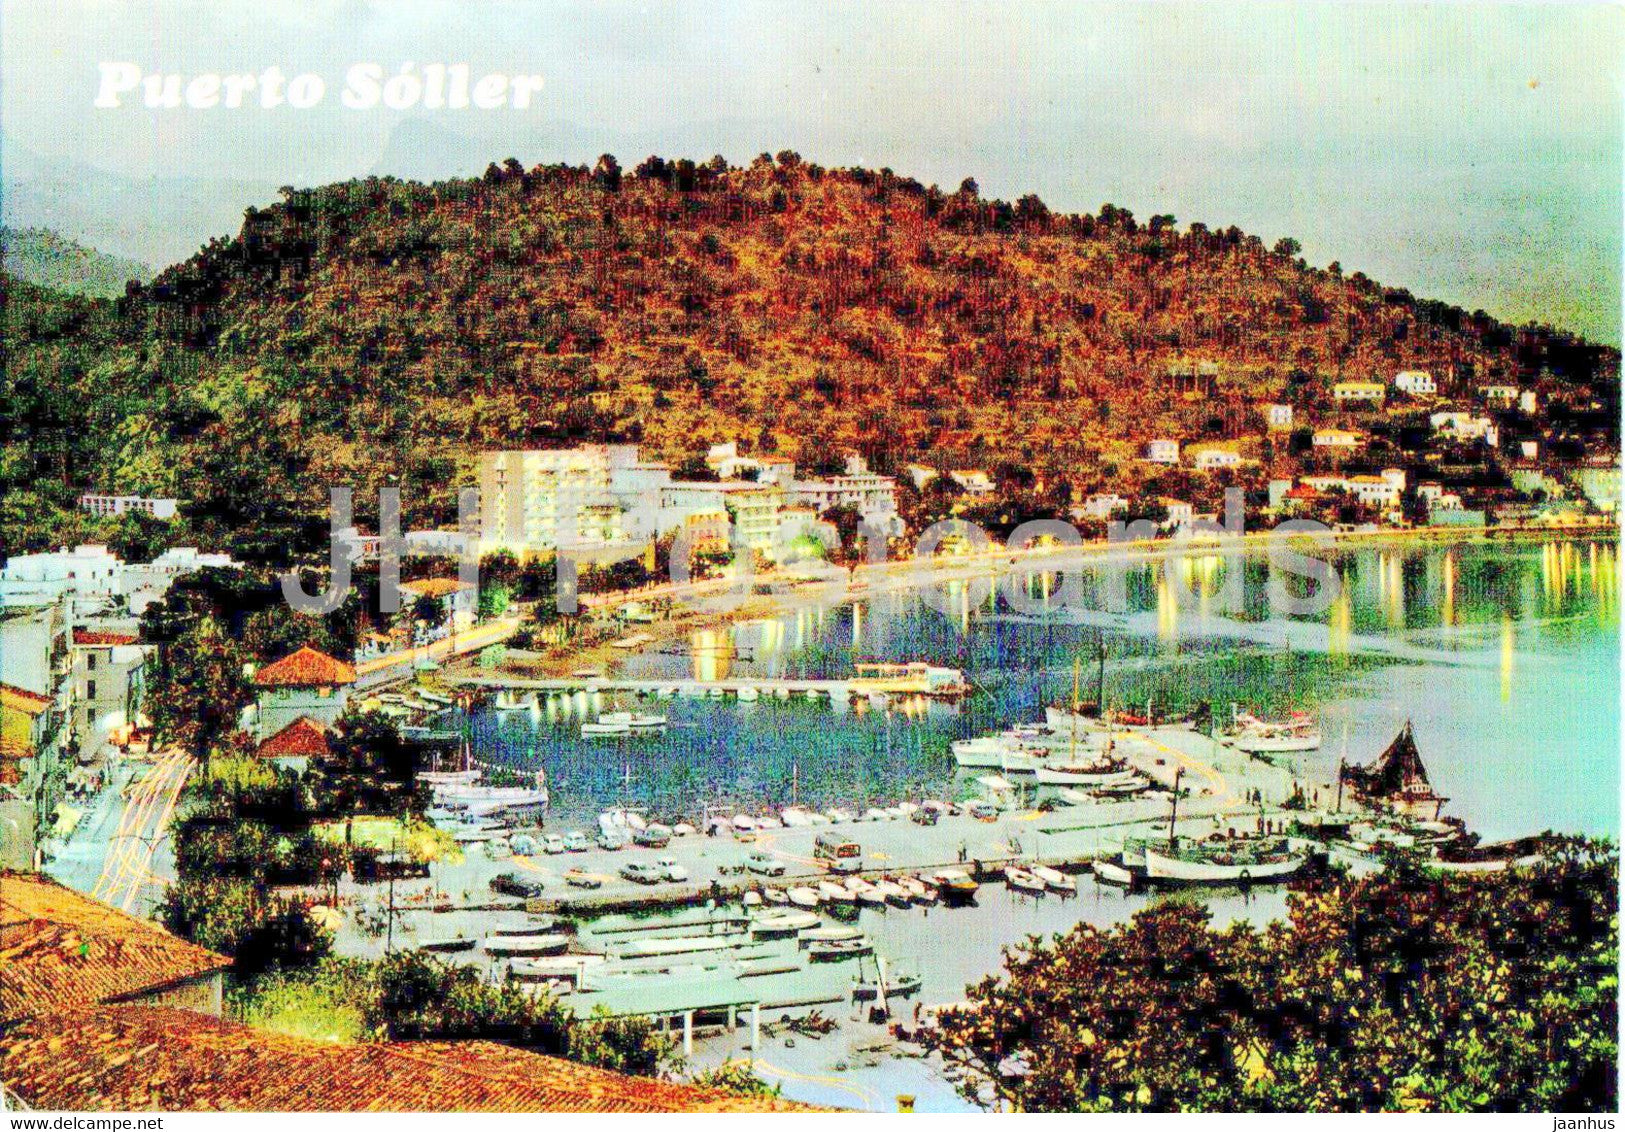 Puerto Soller - Vista parcial nocturna del Puerto - Mallorca - 2610 - Spain - unused - JH Postcards